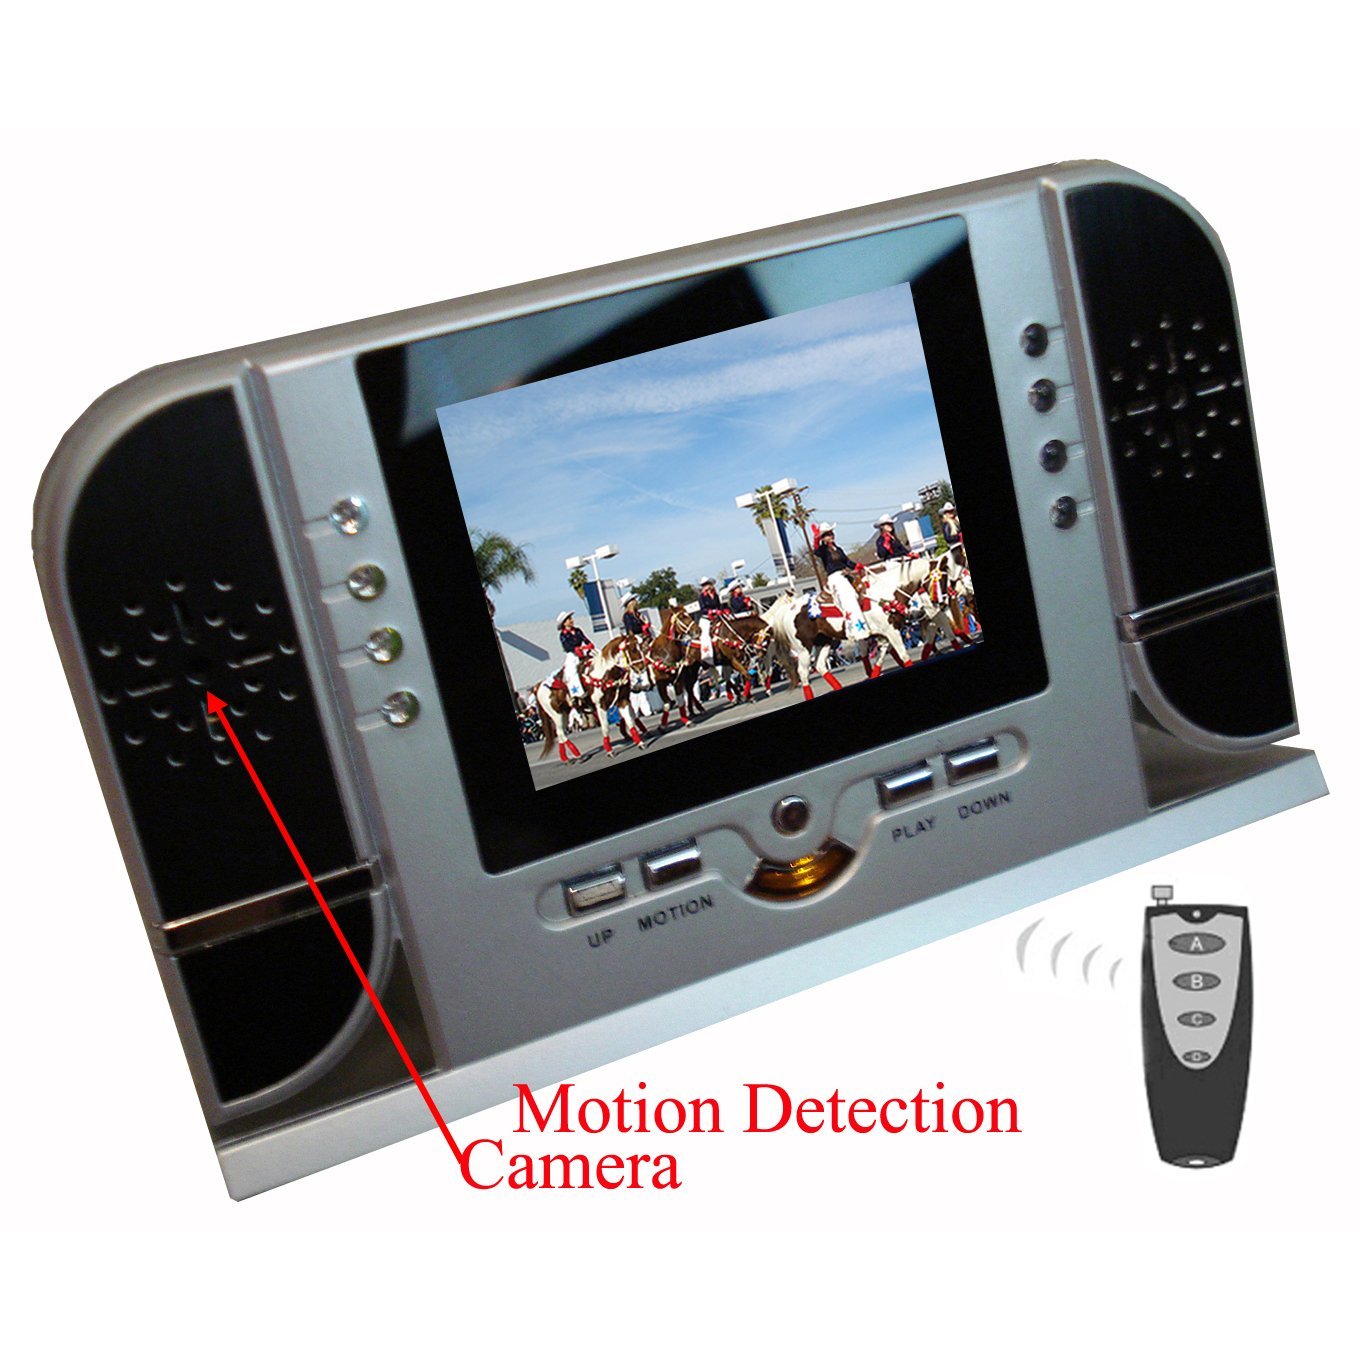 Despertador LCD com câmera + detecção de movimento + LED IR noturno